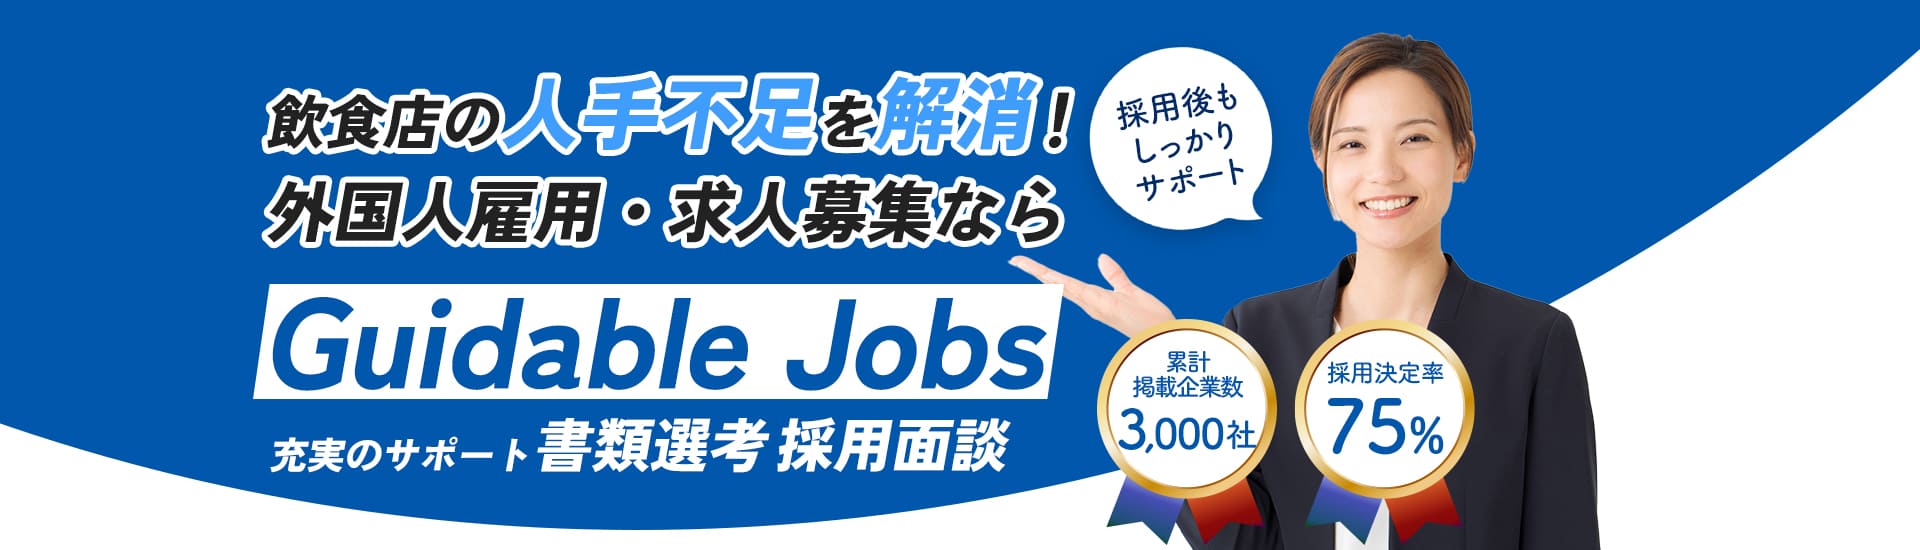 福島市の求人・人材募集(正社員・アルバイト・パート・派遣)で外国人の採用をサポート